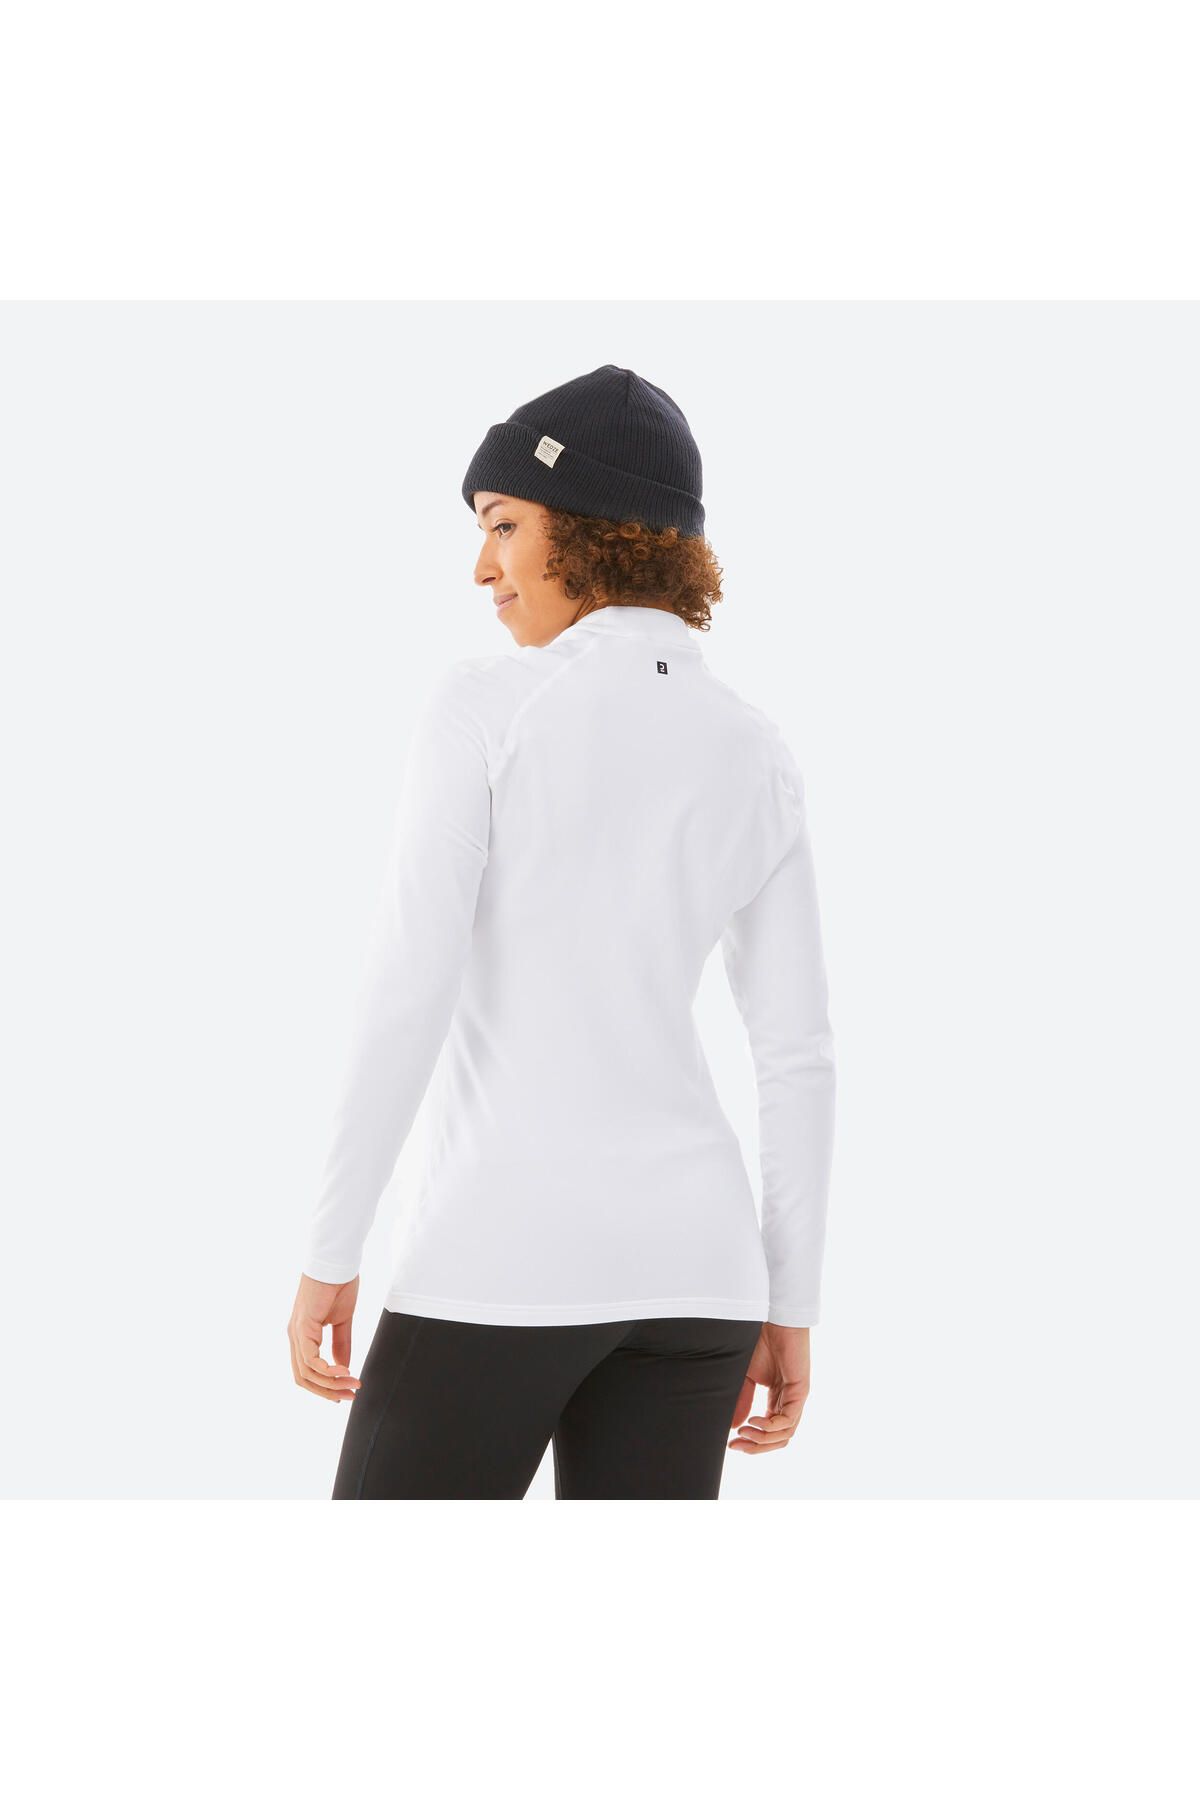 Decathlon Women's Ski Underwear - White - BL 500 - Trendyol